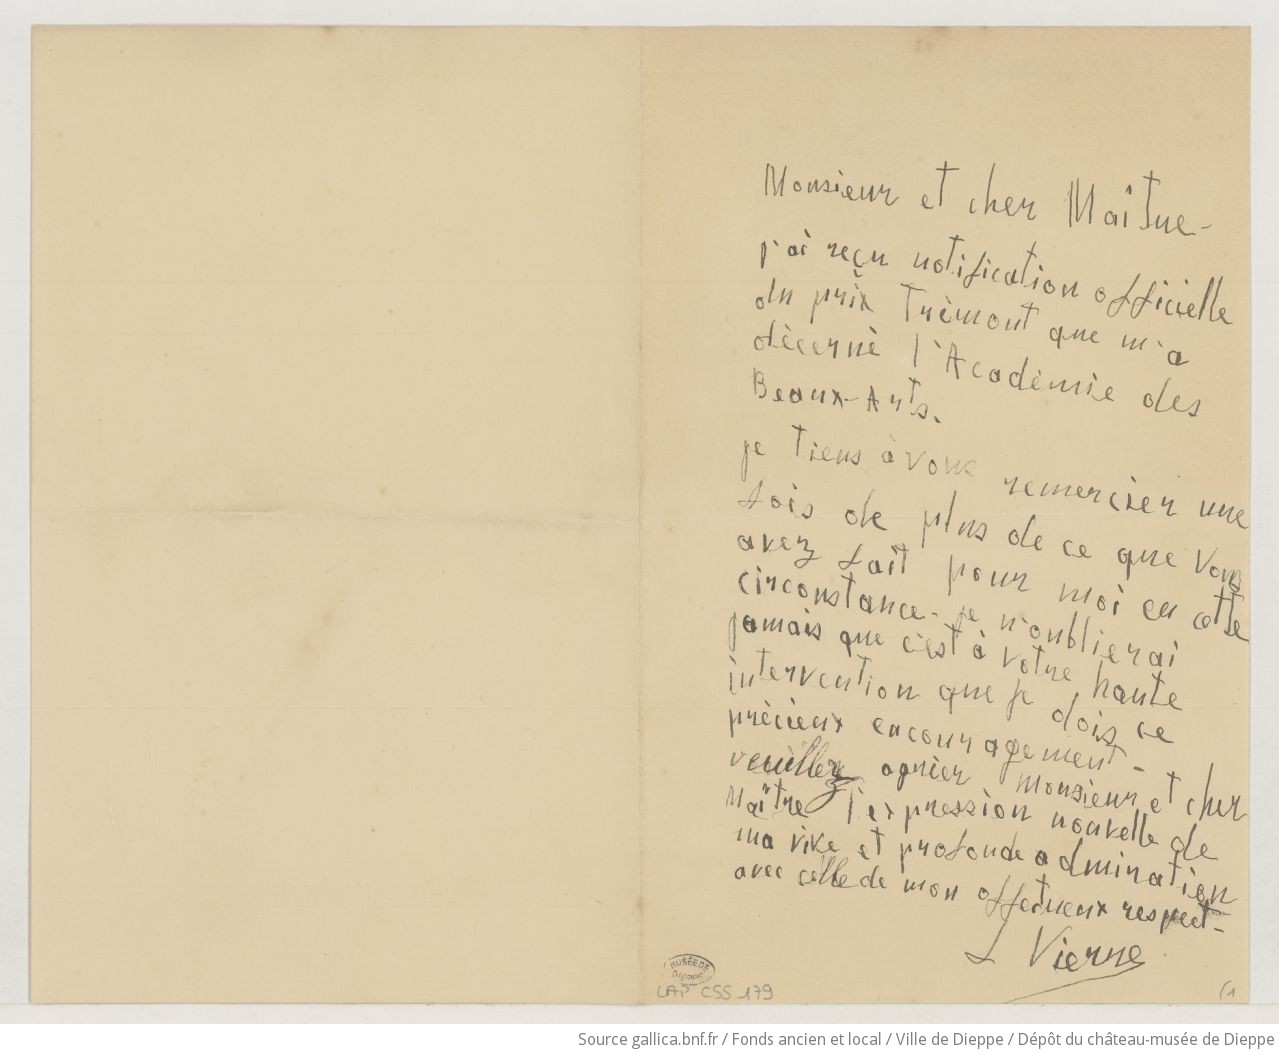 [2 lettres de Louis Vierne à Camille Saint-Saëns] (manuscrit autographe)